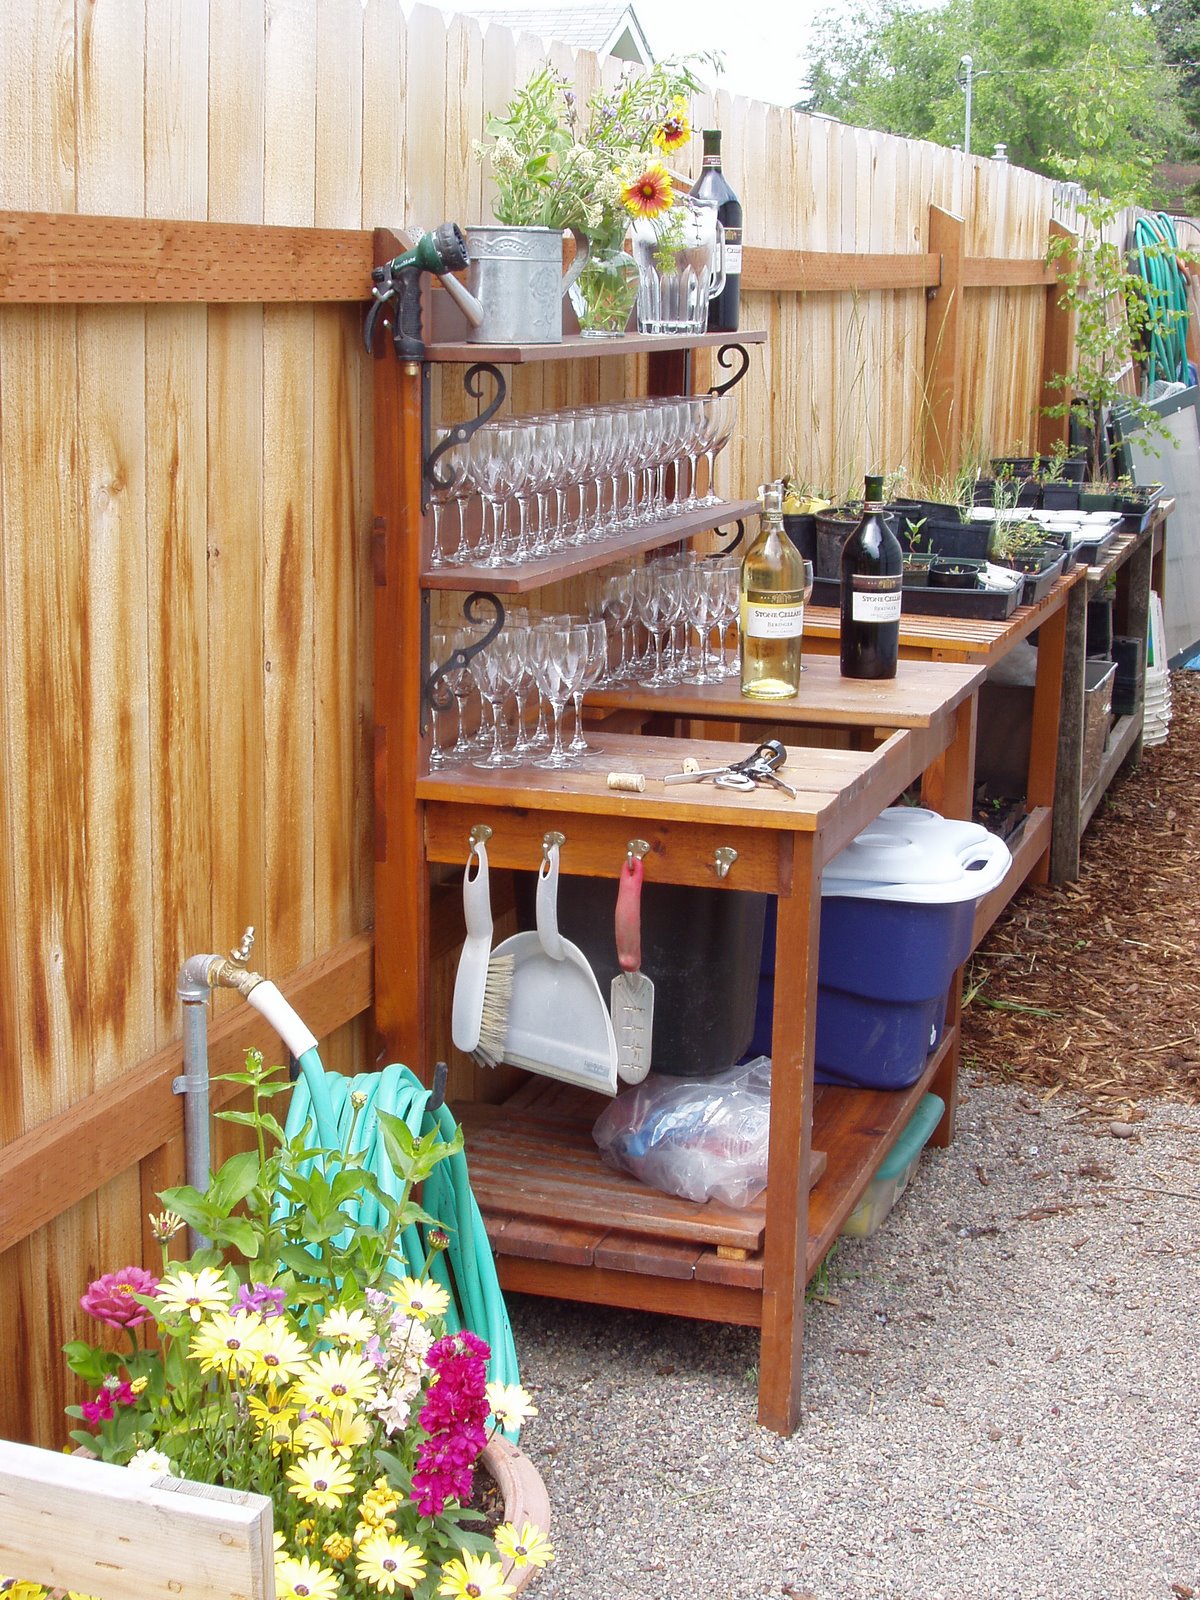 Montana Wildlife Gardener: Repurposed potting bench/ garden sideboard